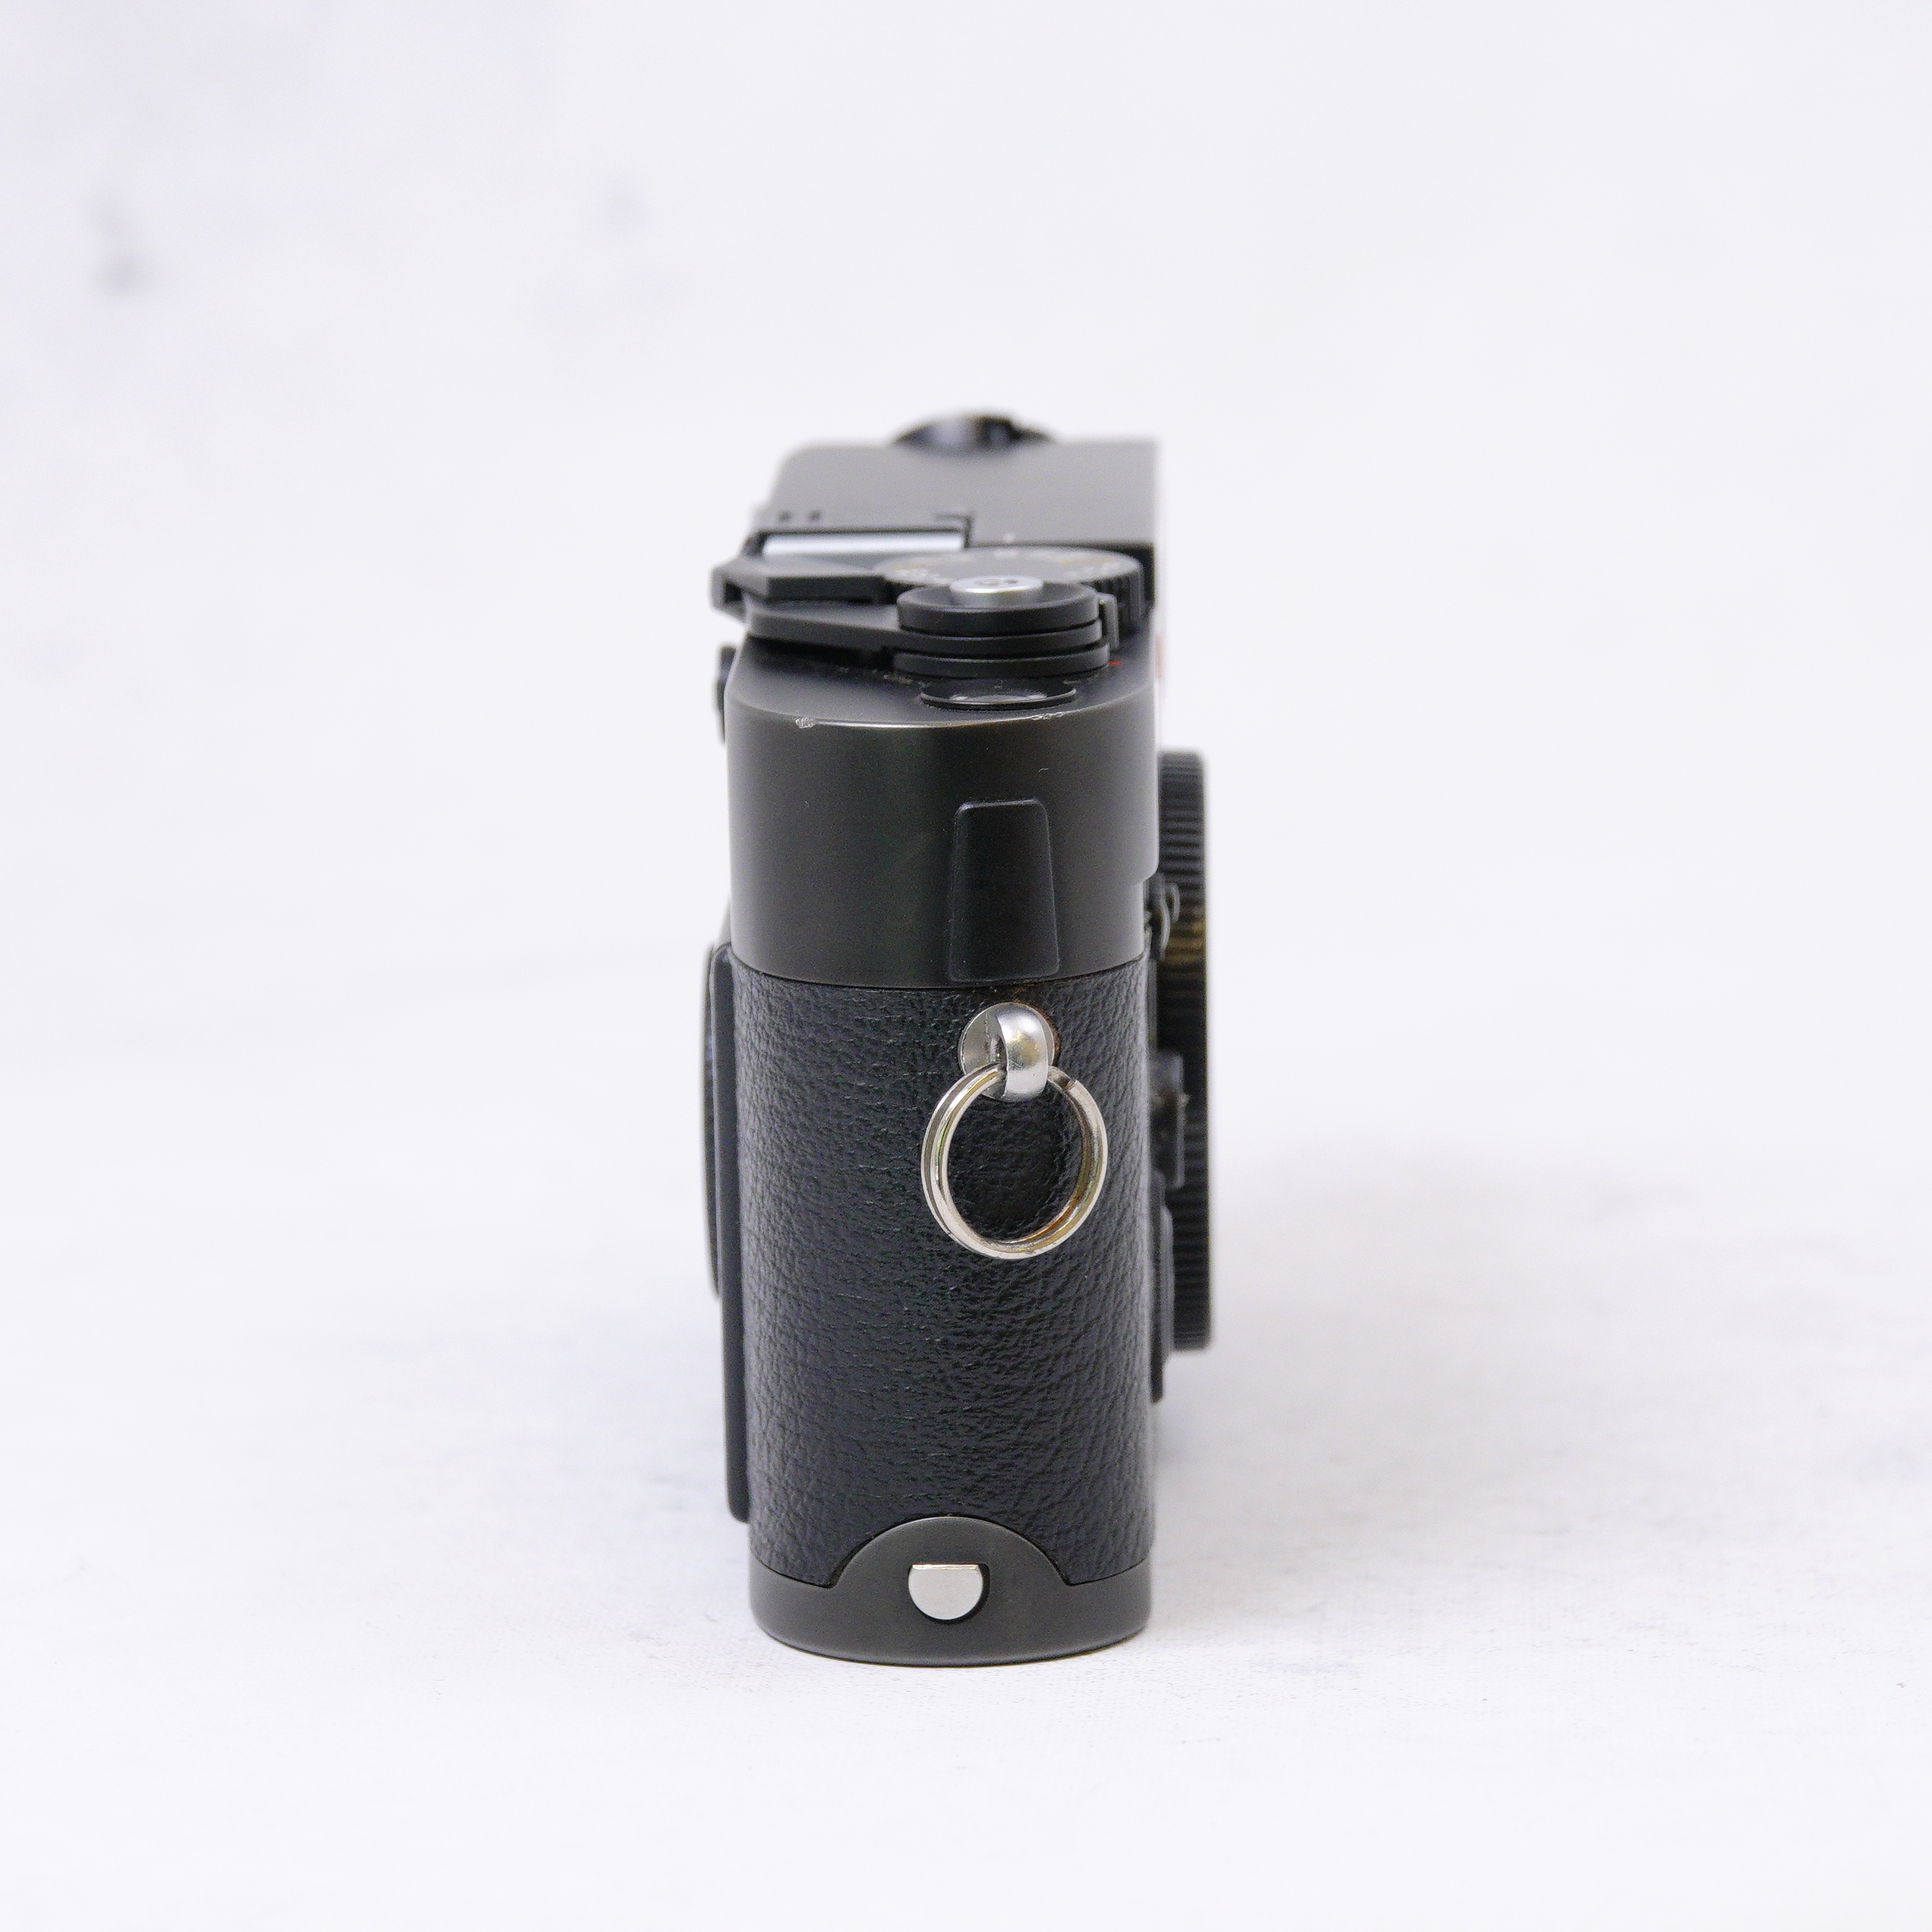 Leica M7 Rangefinder Camera (Black) con accesorios - Usado